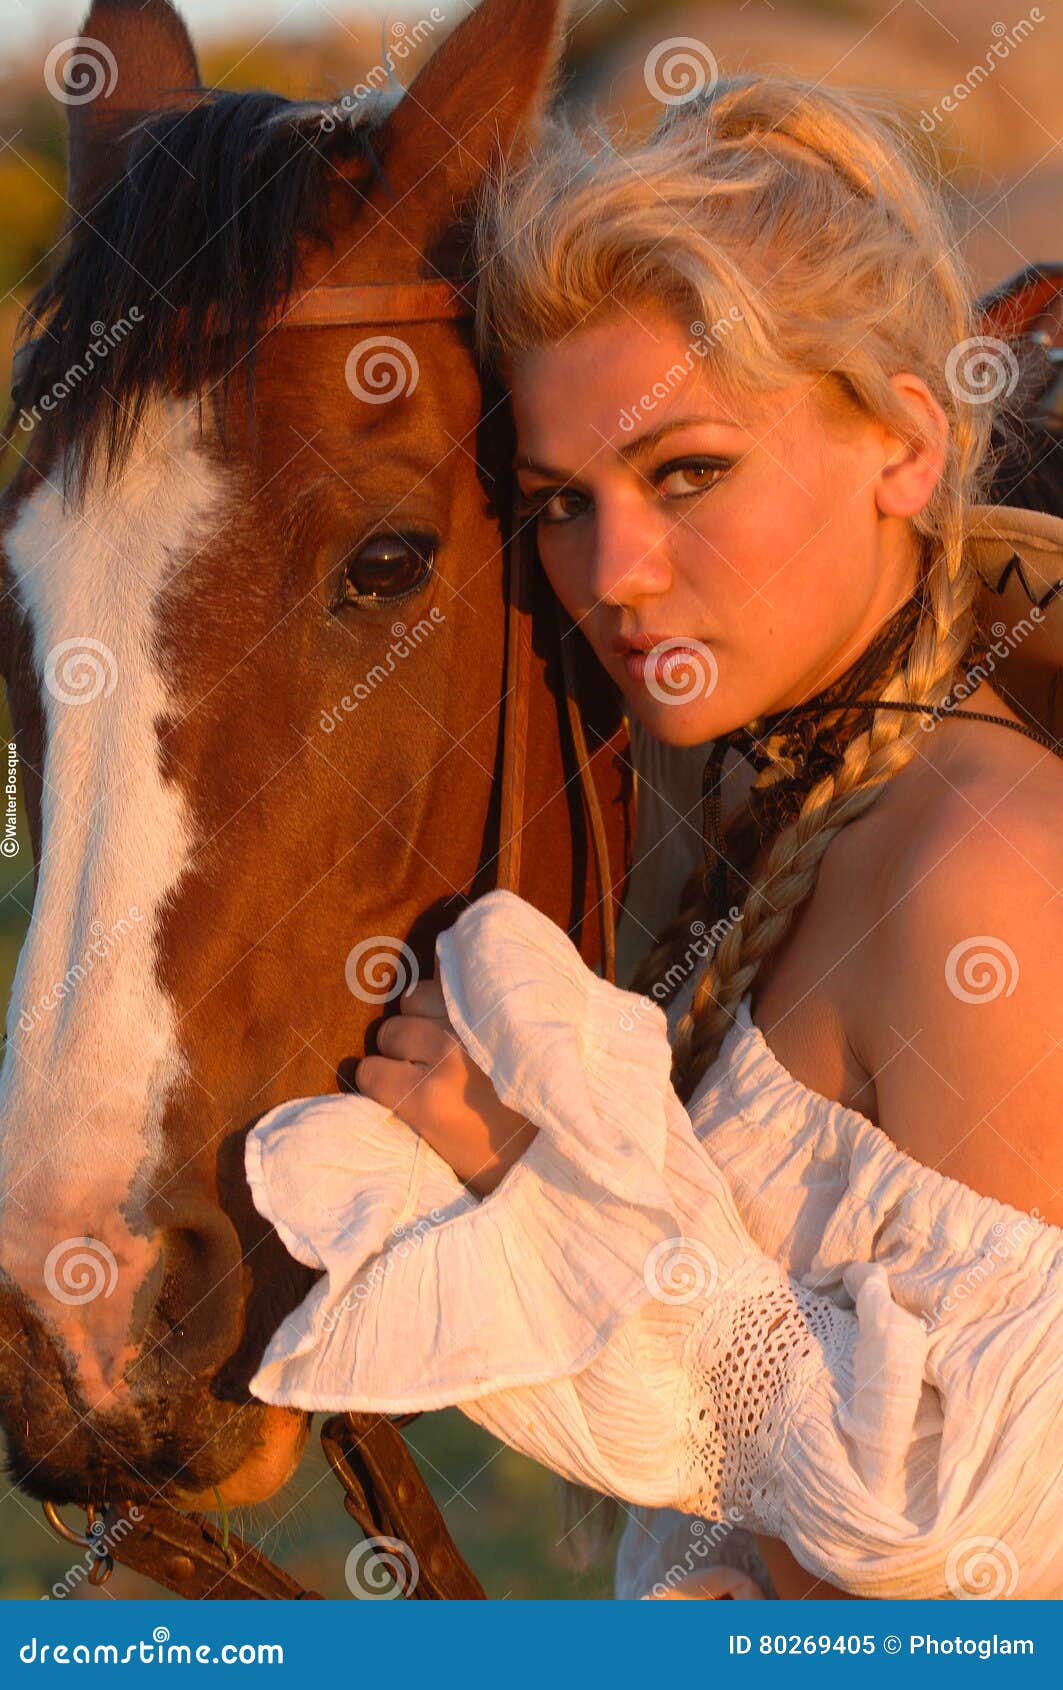 Girl horse naked Animal Sex